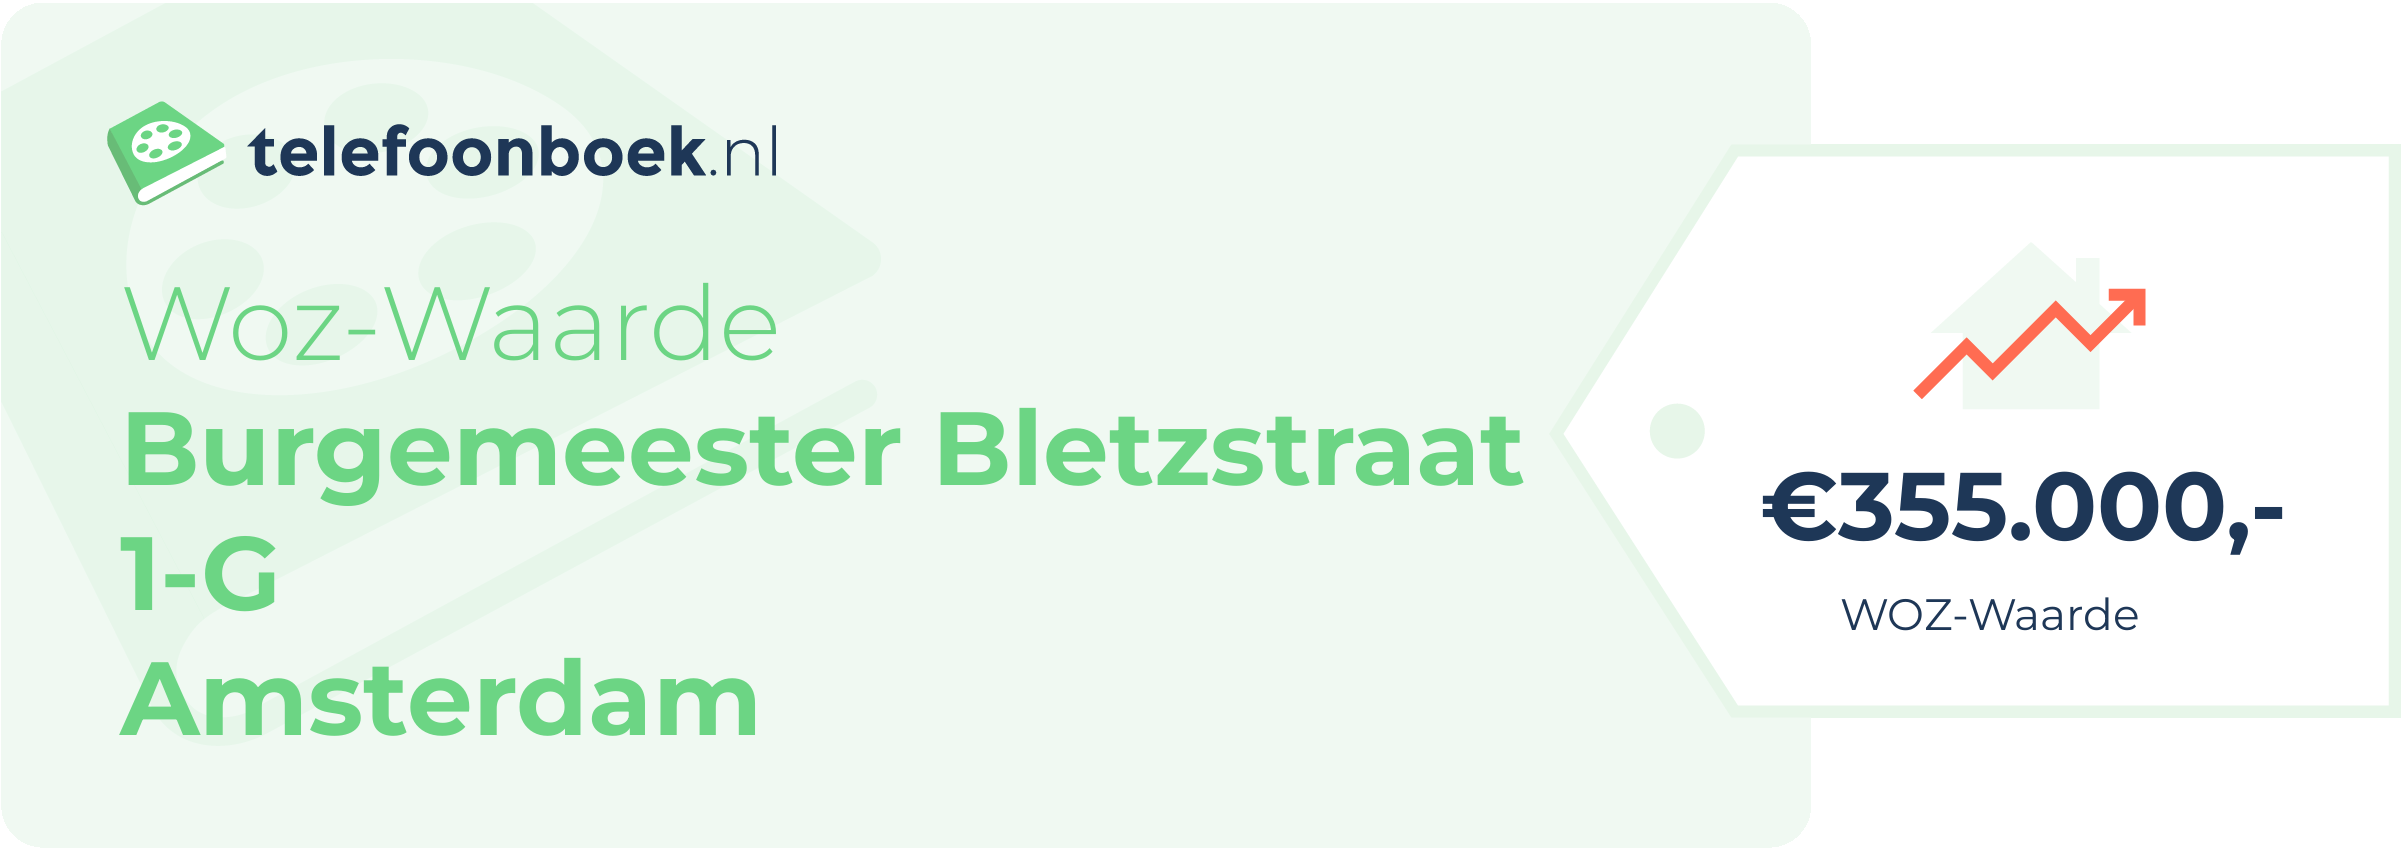 WOZ-waarde Burgemeester Bletzstraat 1-G Amsterdam